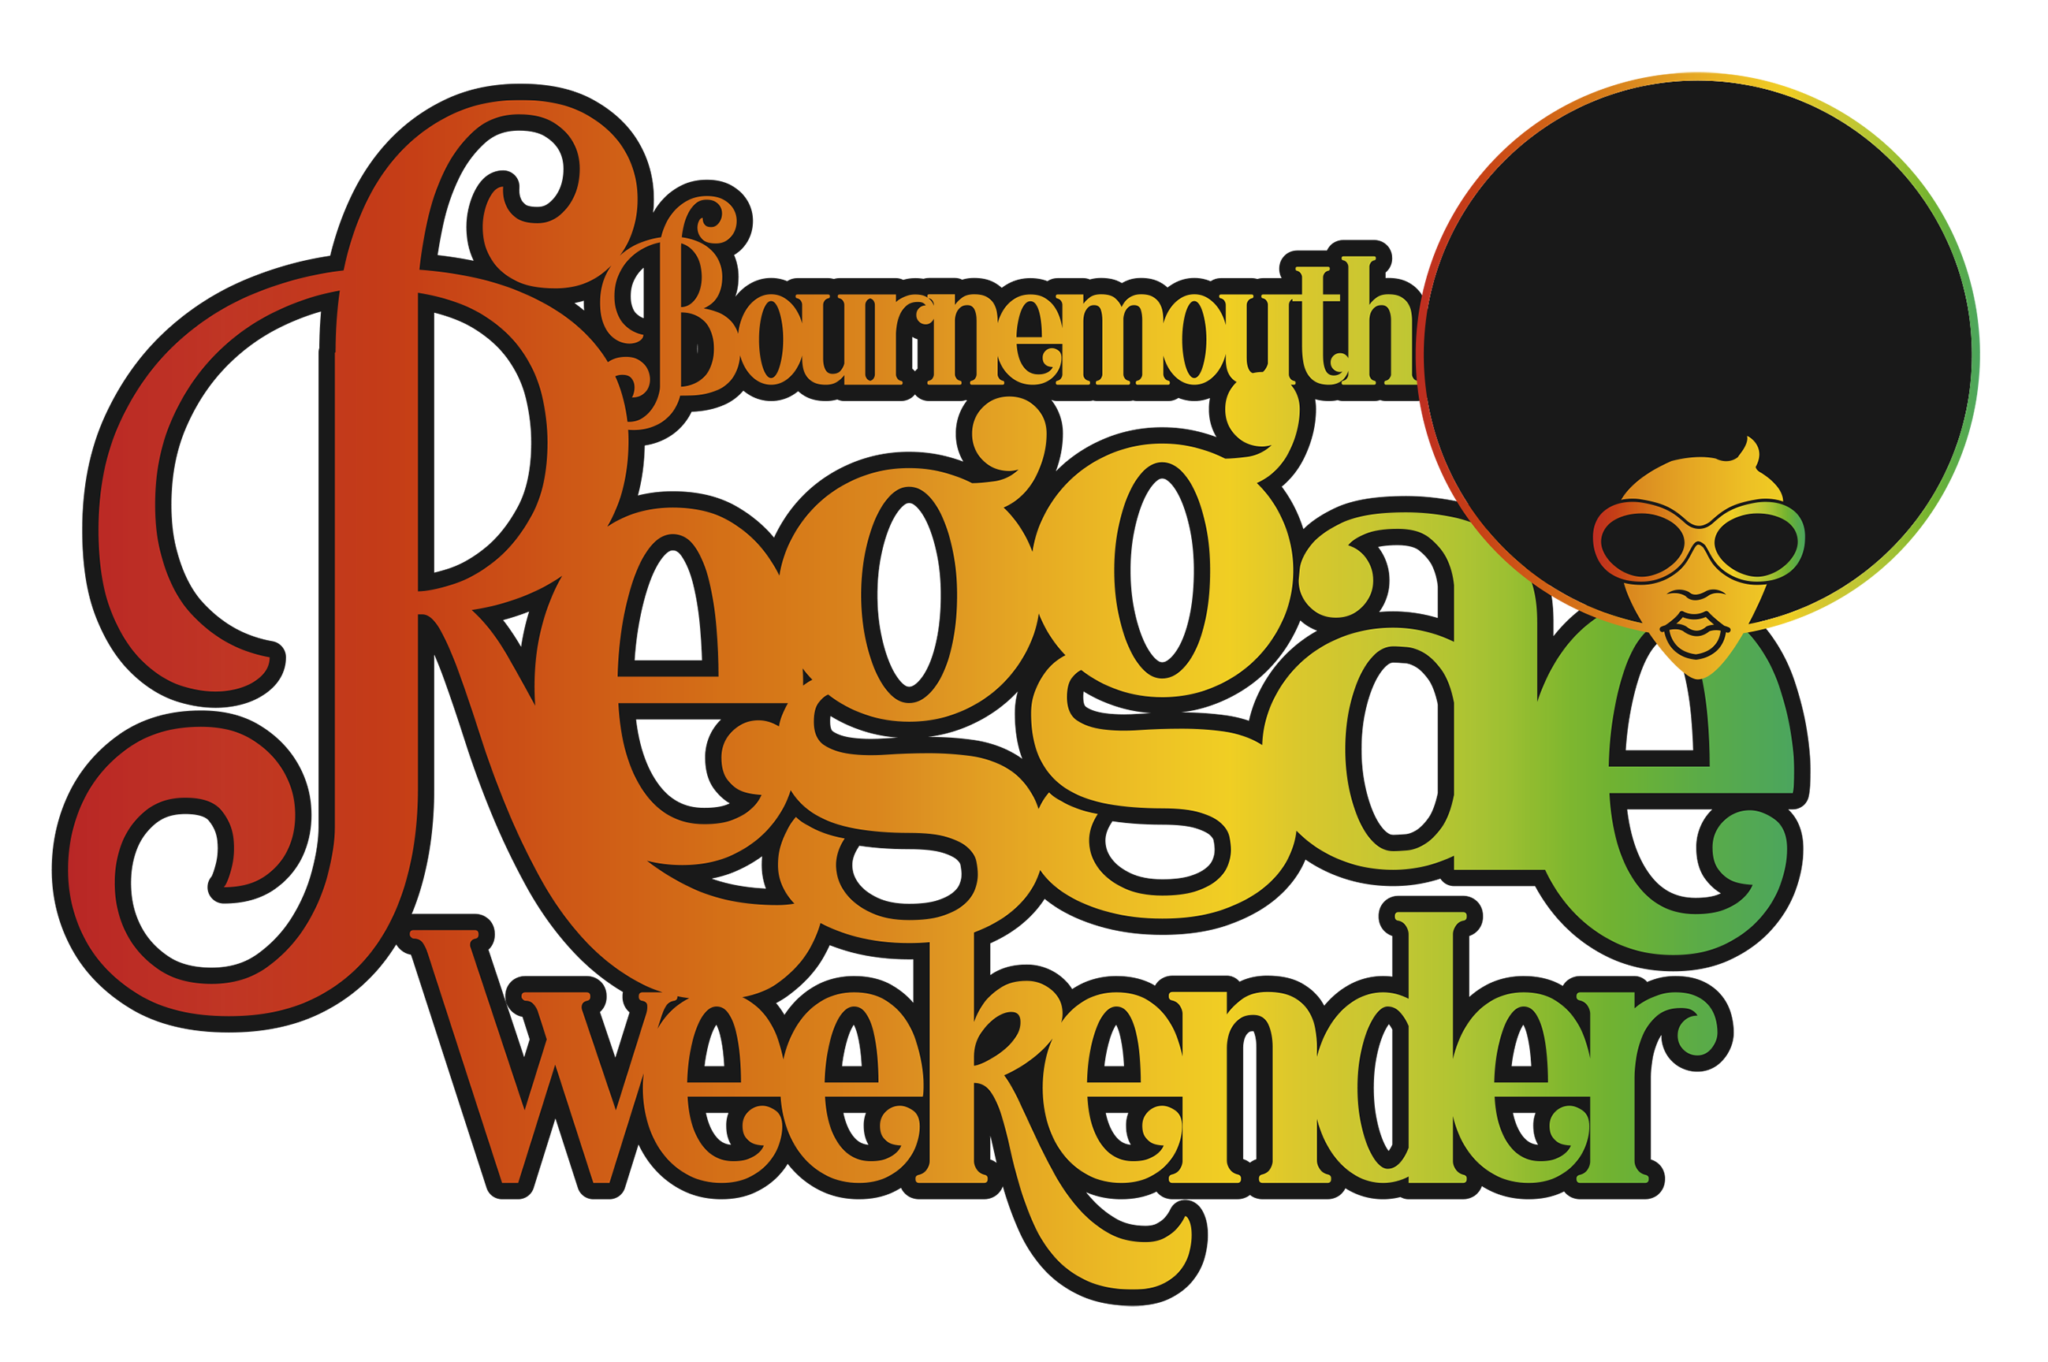 Bournemouth Reggae Weekender Sponsorship